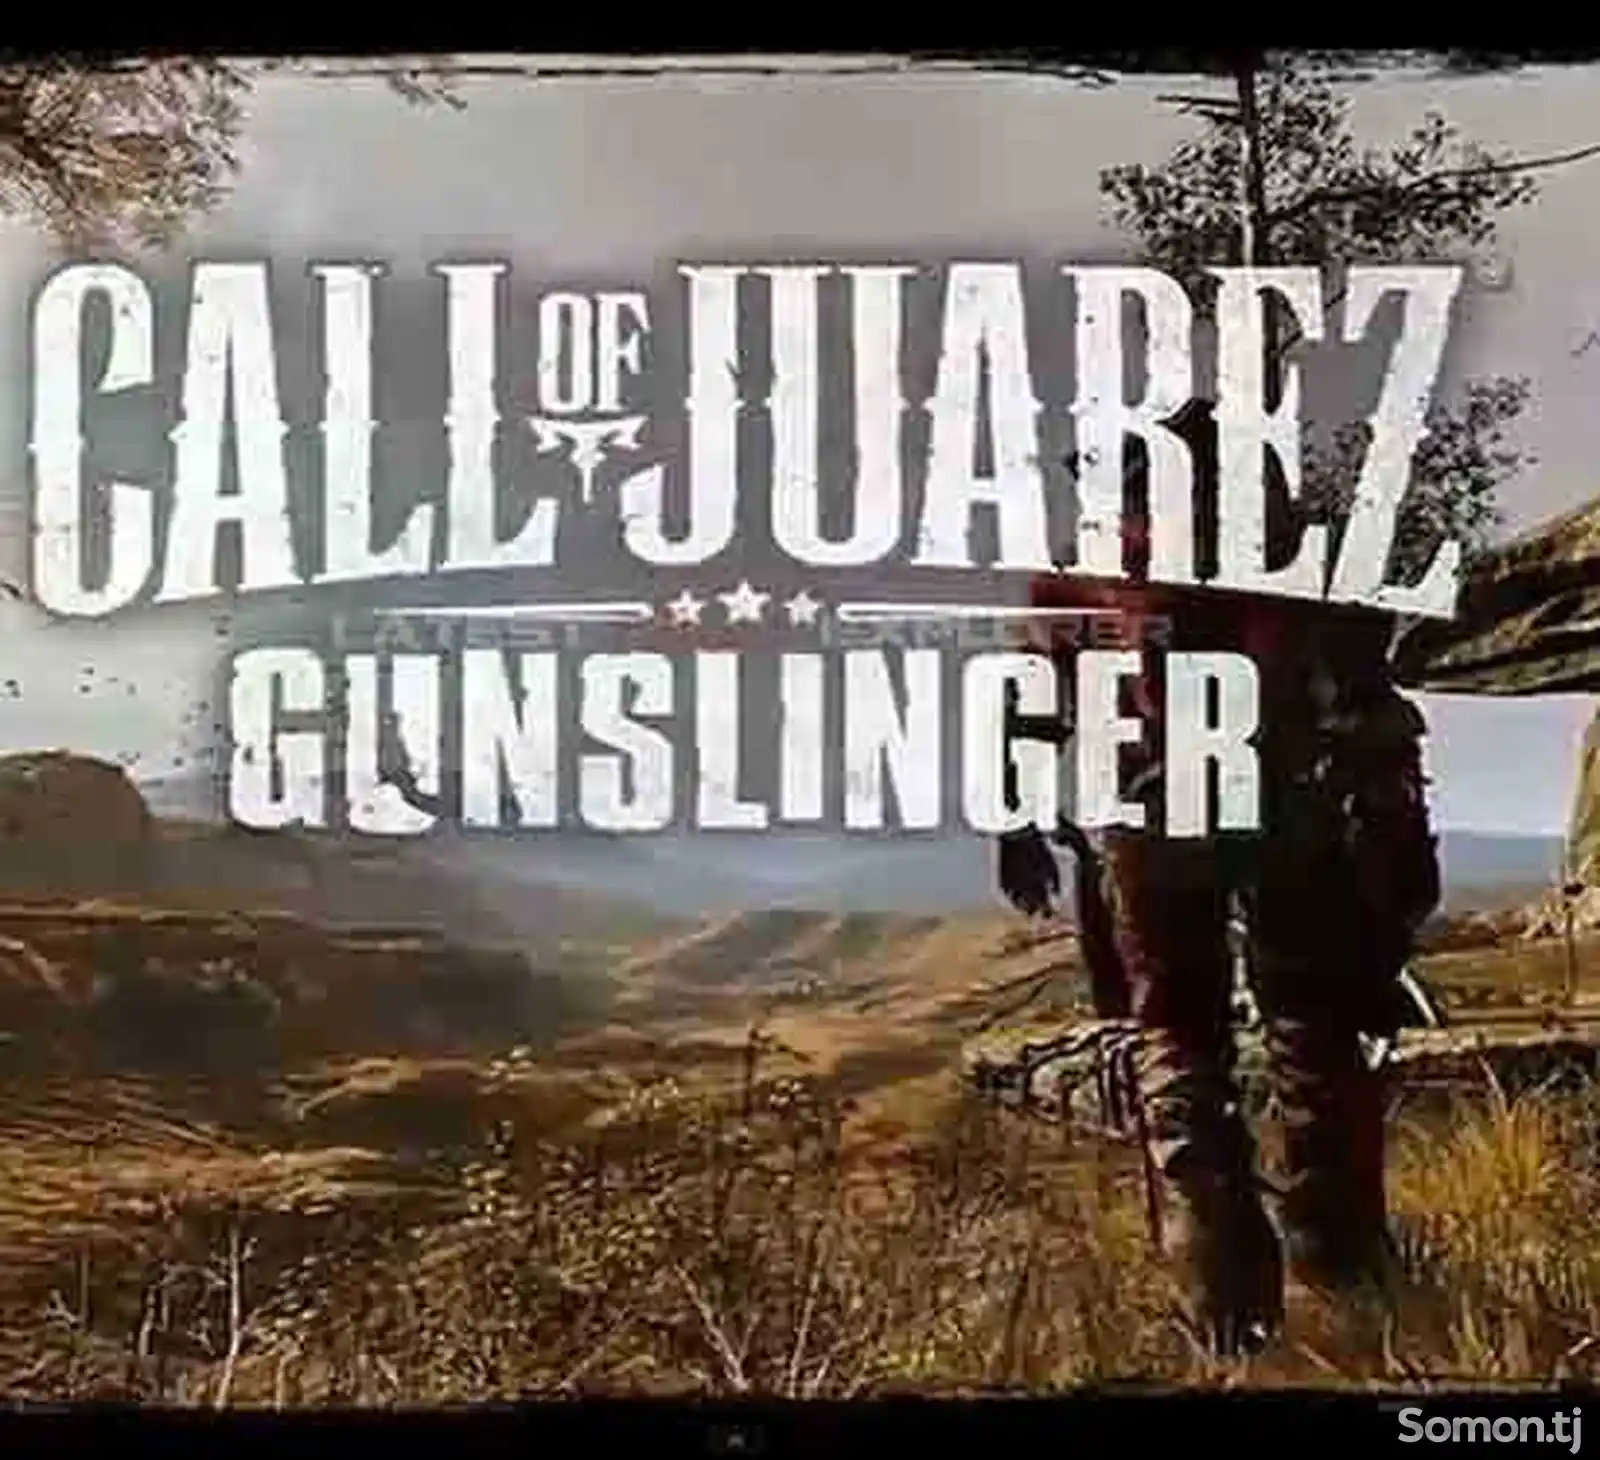 Игра Call of juarez gunslinger для прошитых Xbox 360